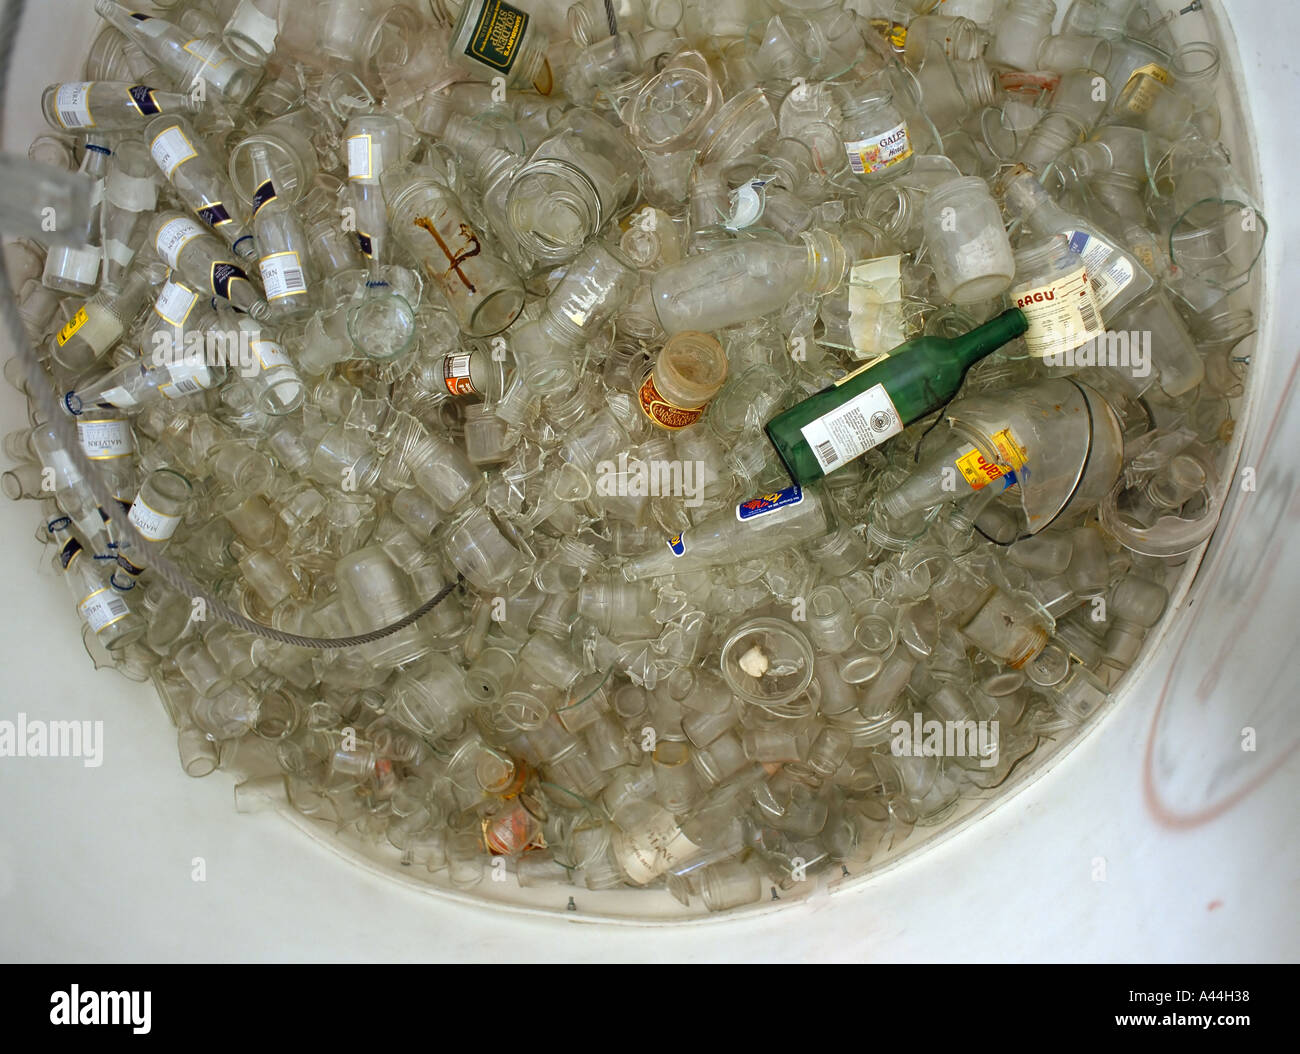 Blick in ein klares Glas Recyclingbehälter, eine seltsame grüne Flasche verdirbt die Sammlung Stockfoto